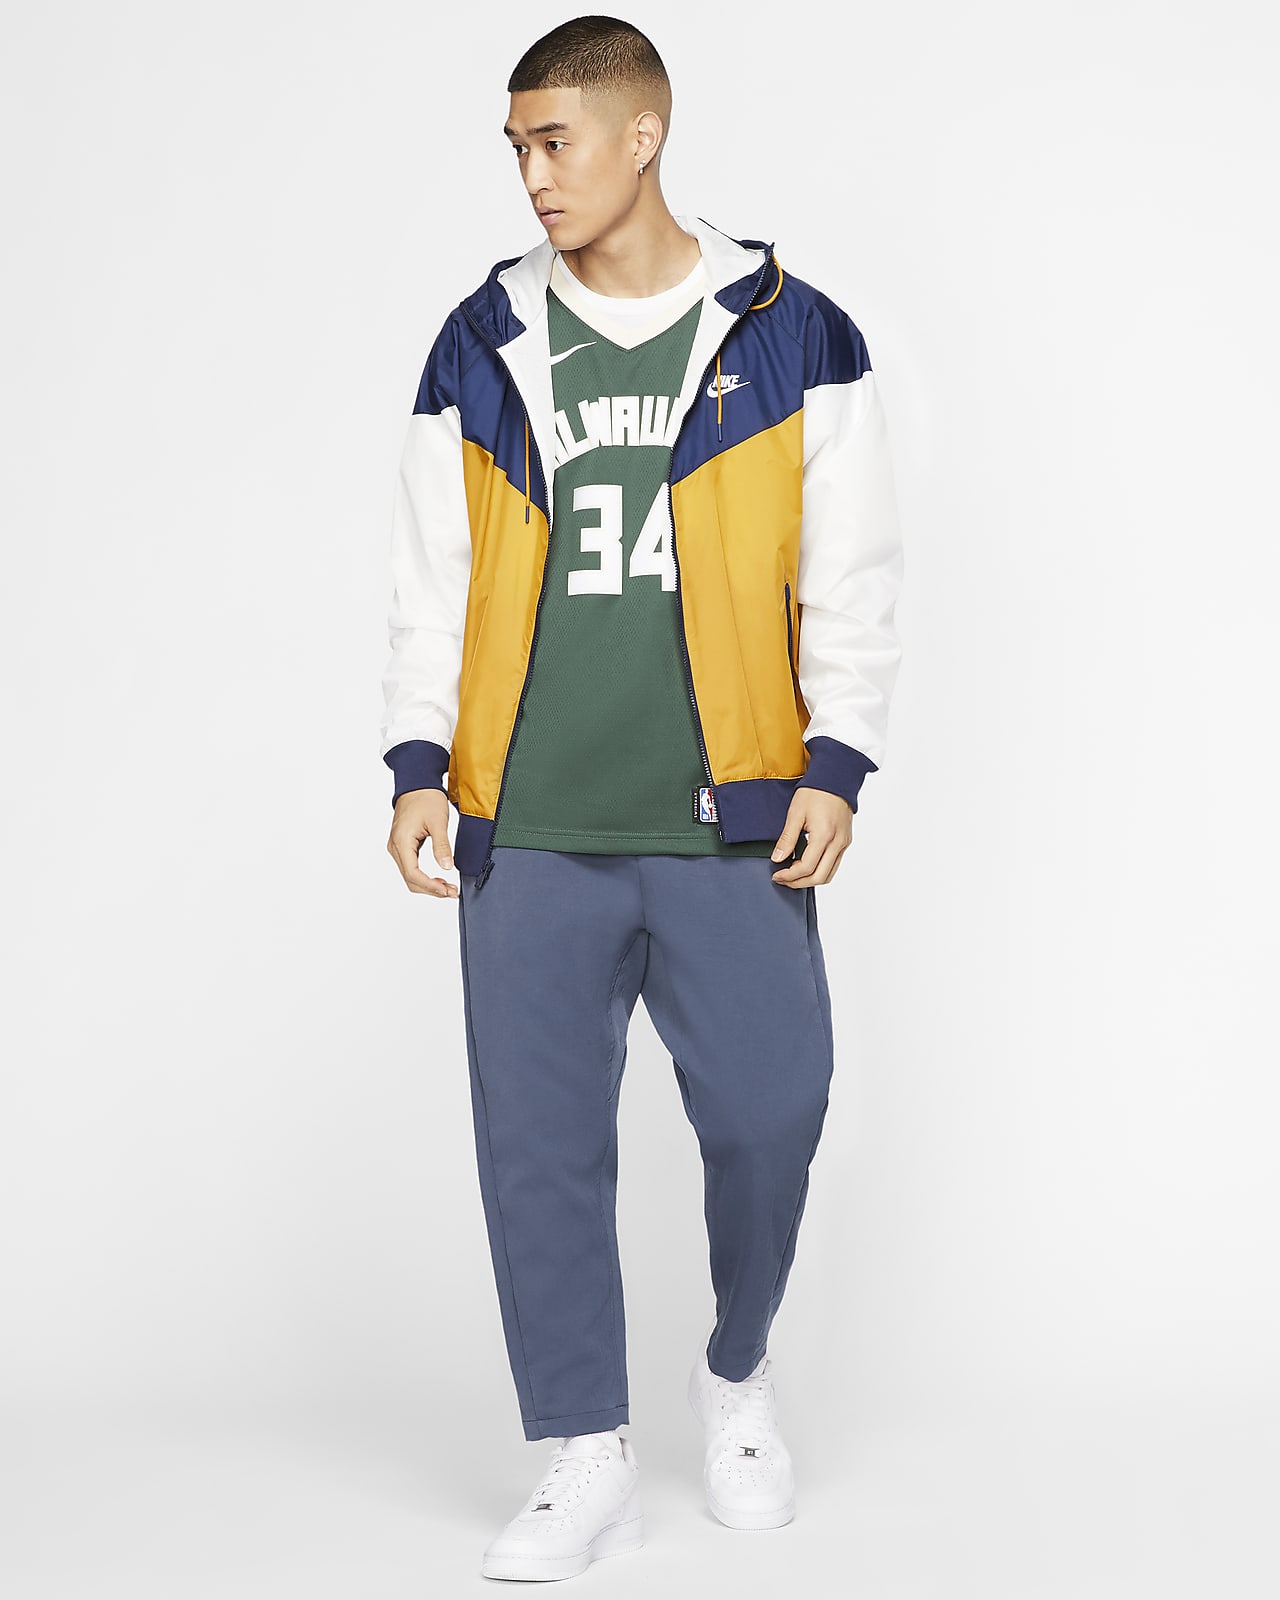 Giannis Antetokounmpo Bucks Icon Edition 2020 Nike NBA Authentic Jersey